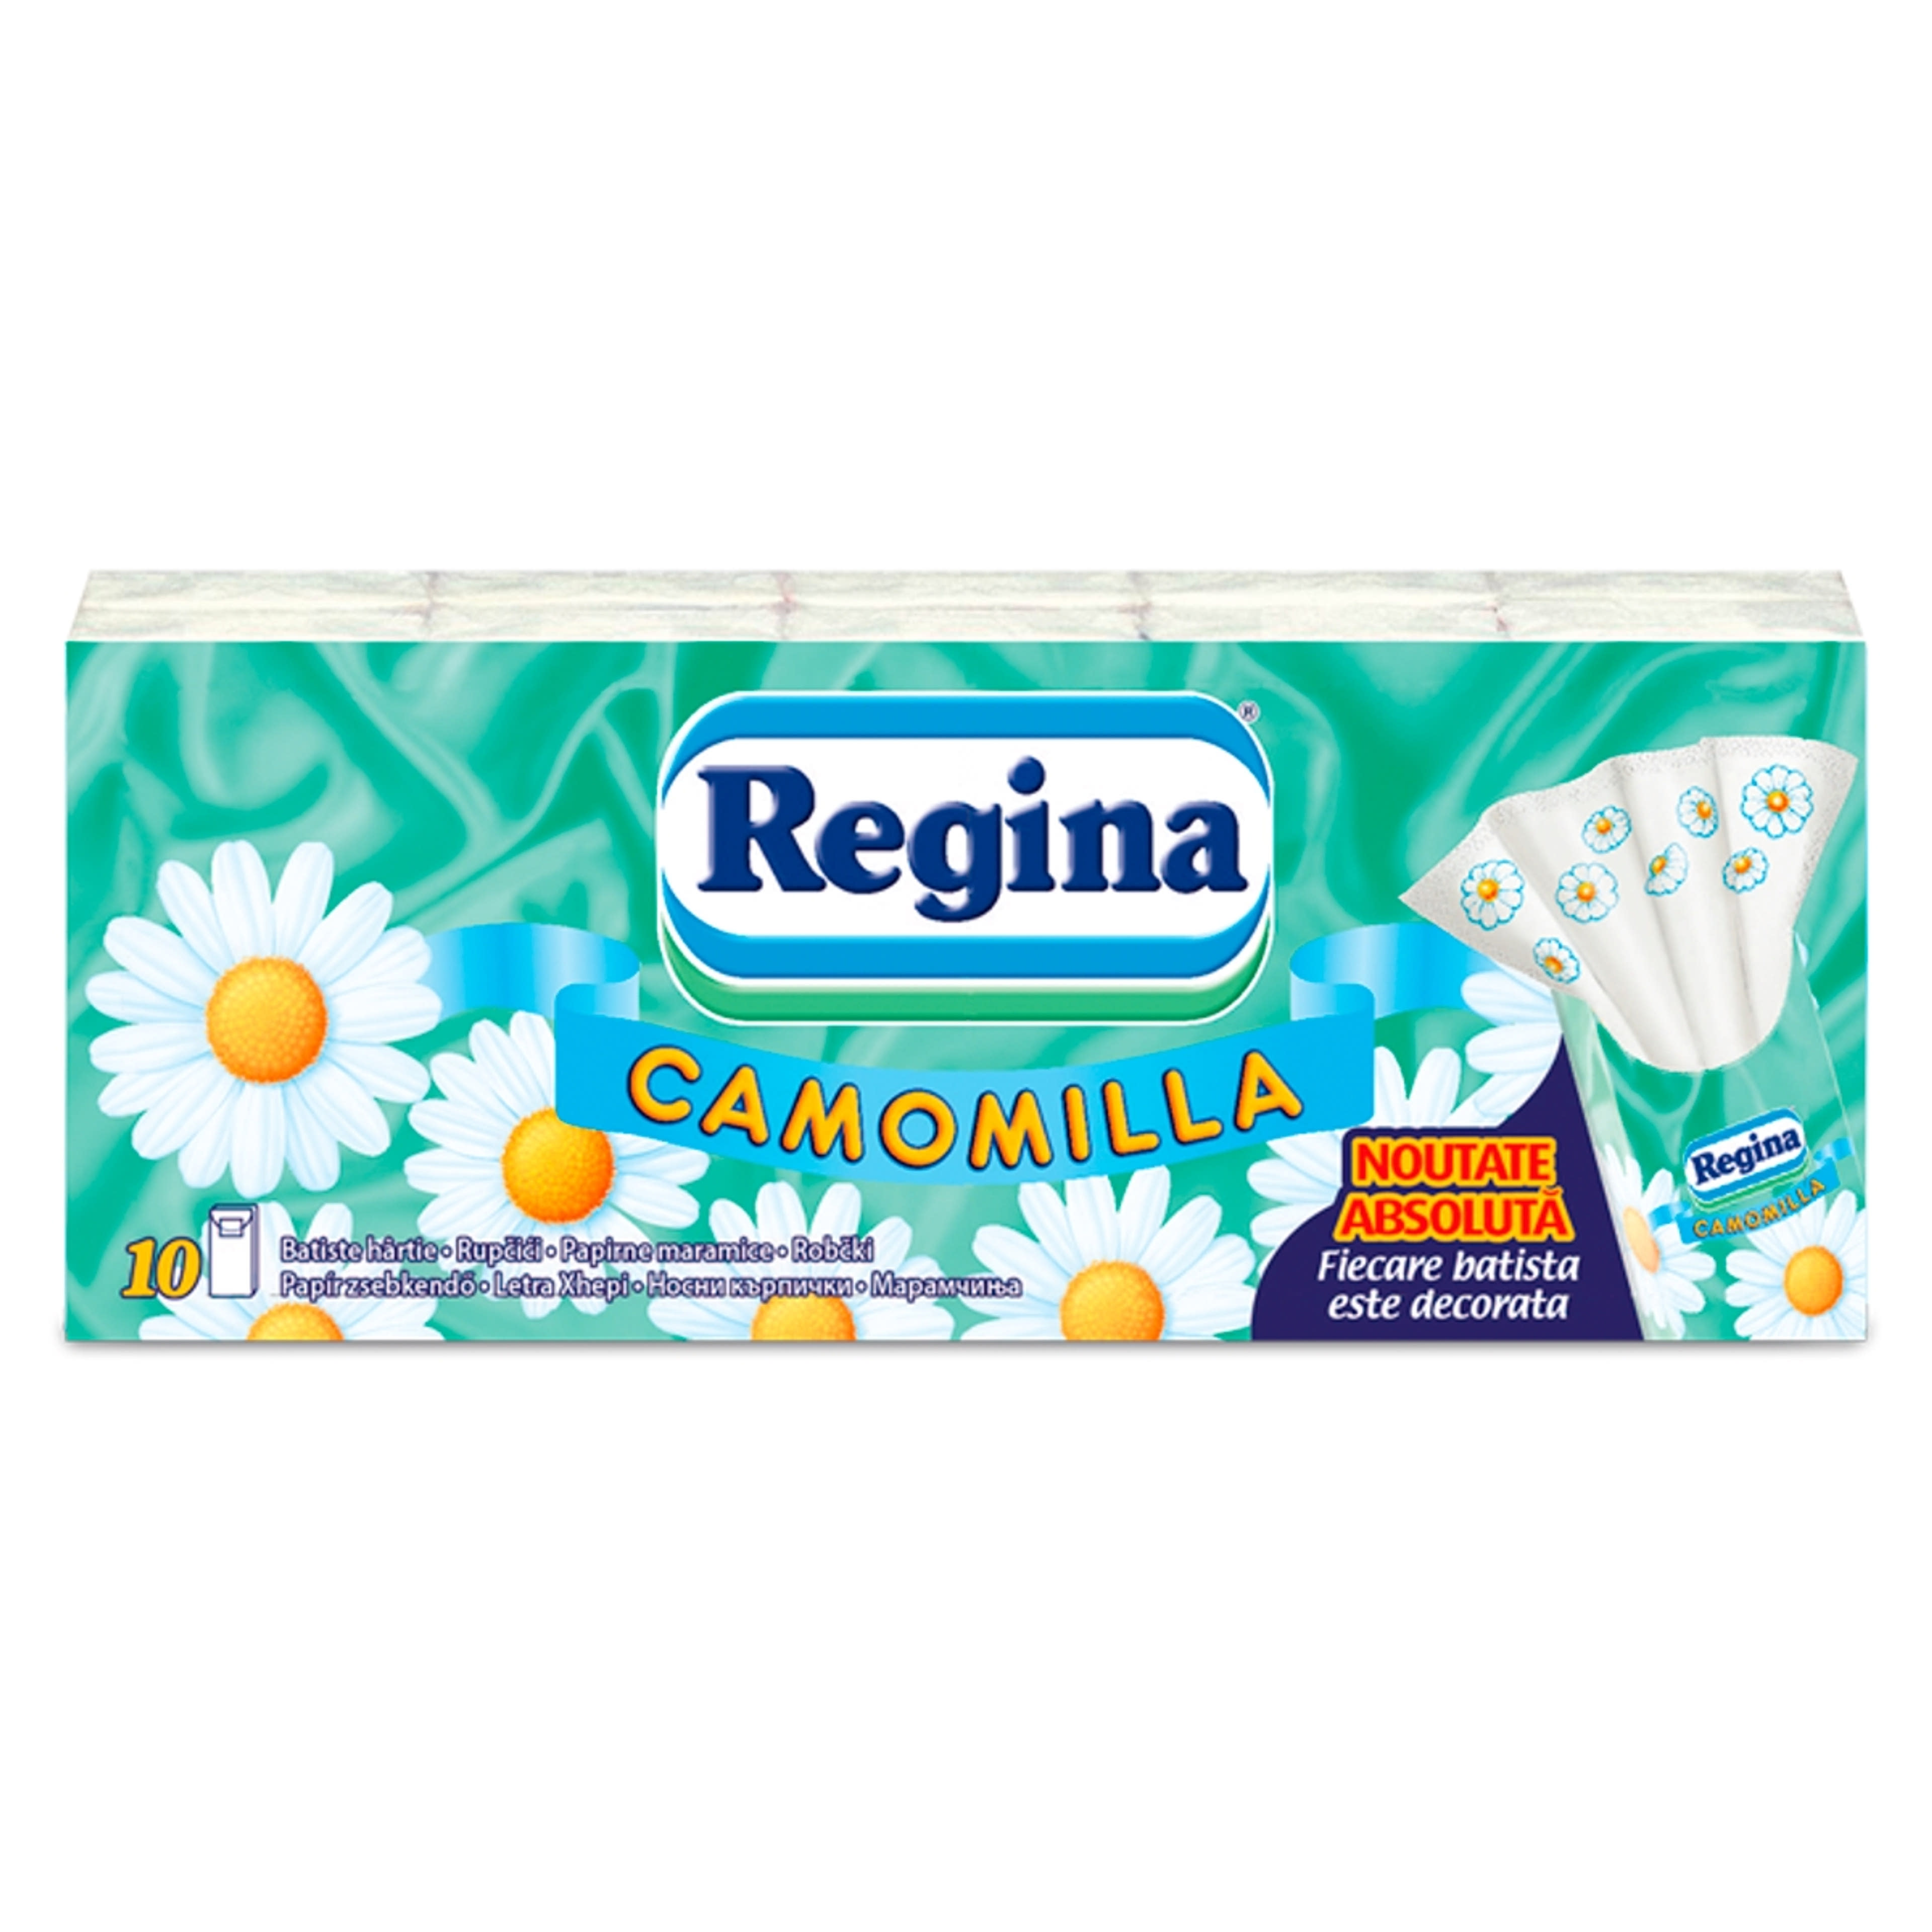 Regina Camomilla papírzsebkendő, 4 rétegű (10x9 db) - 90 db